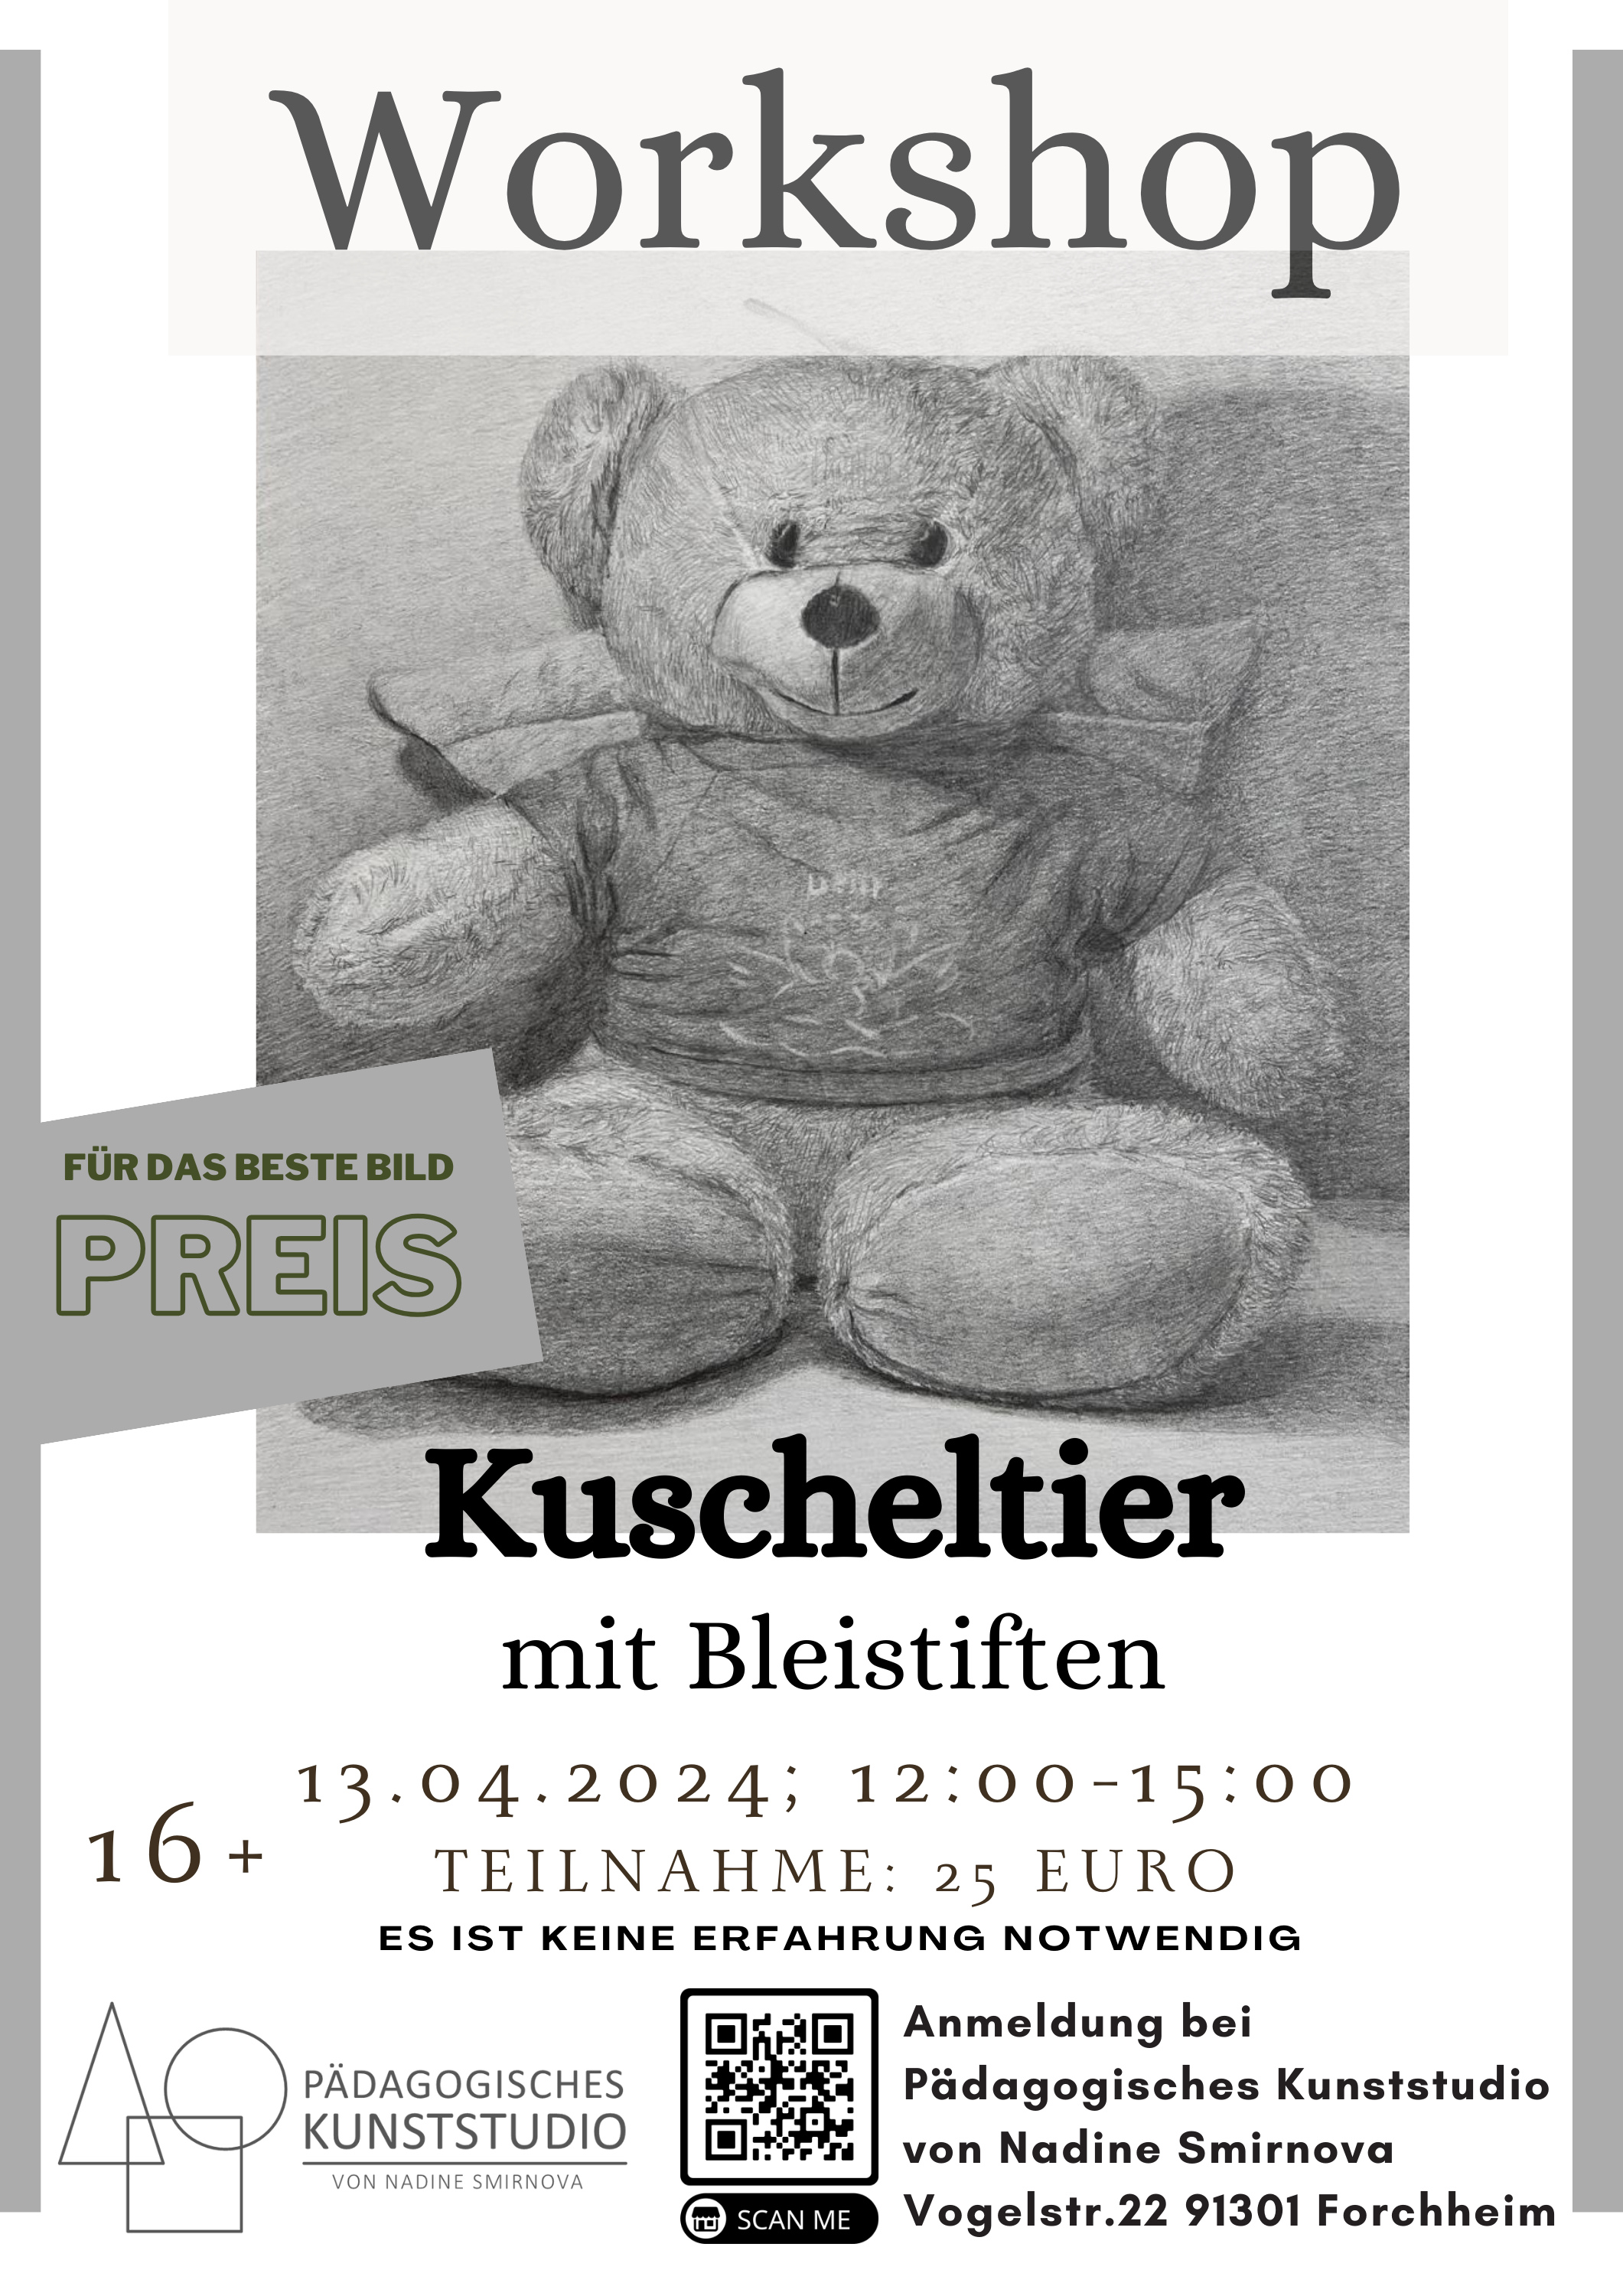 Kuscheltier_Workshop.png